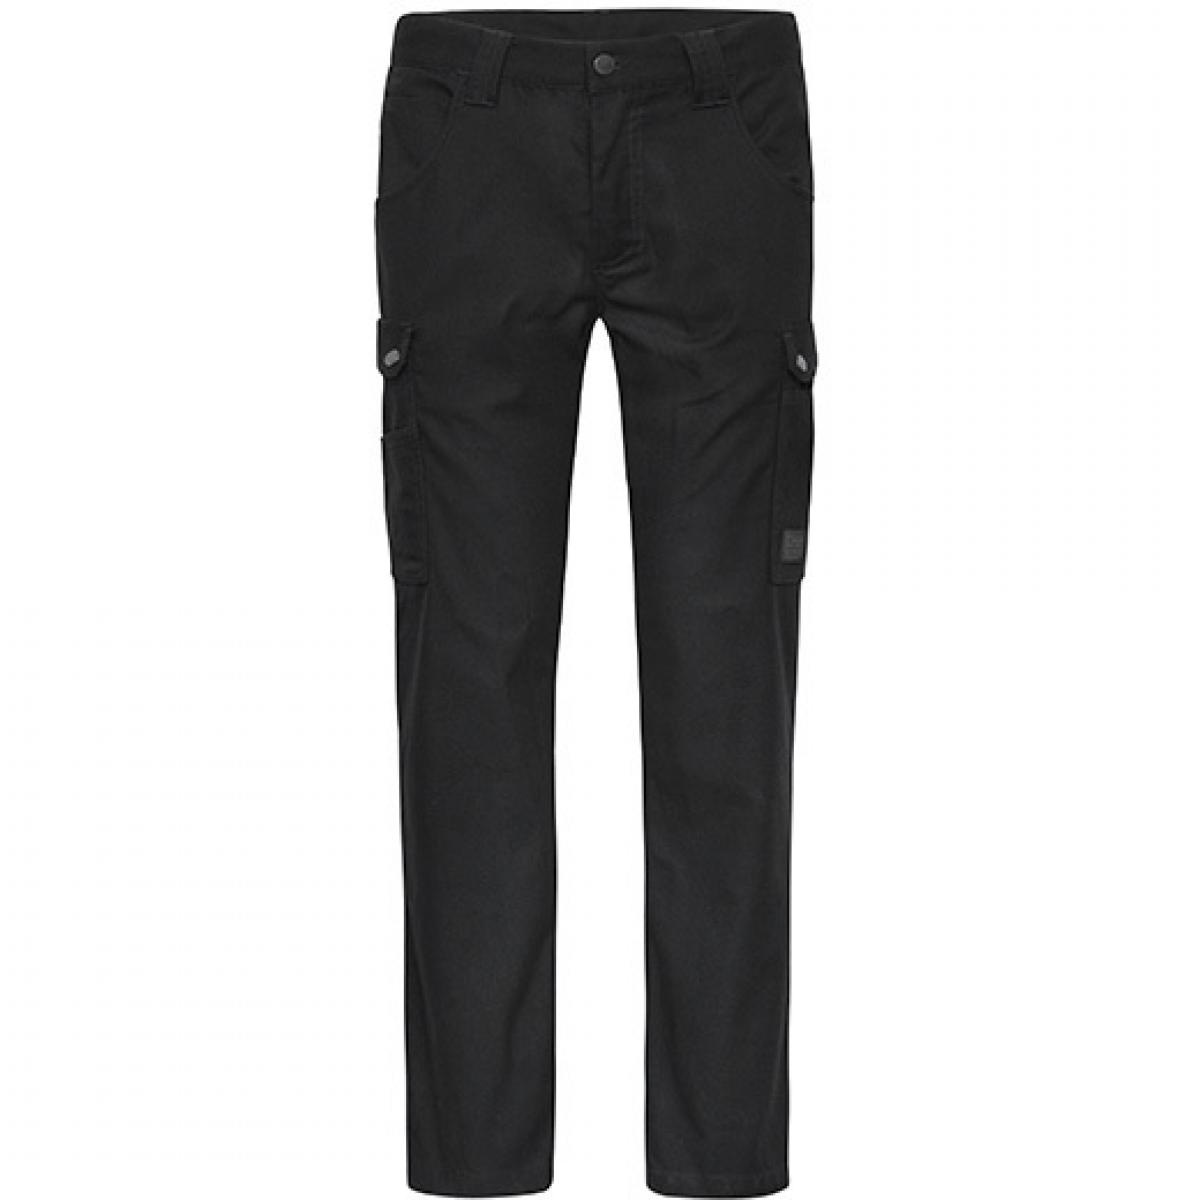 Hersteller: James+Nicholson Herstellernummer: JN877 Artikelbezeichnung: Herren Hose, Workwear Cargo Pants Farbe: Black